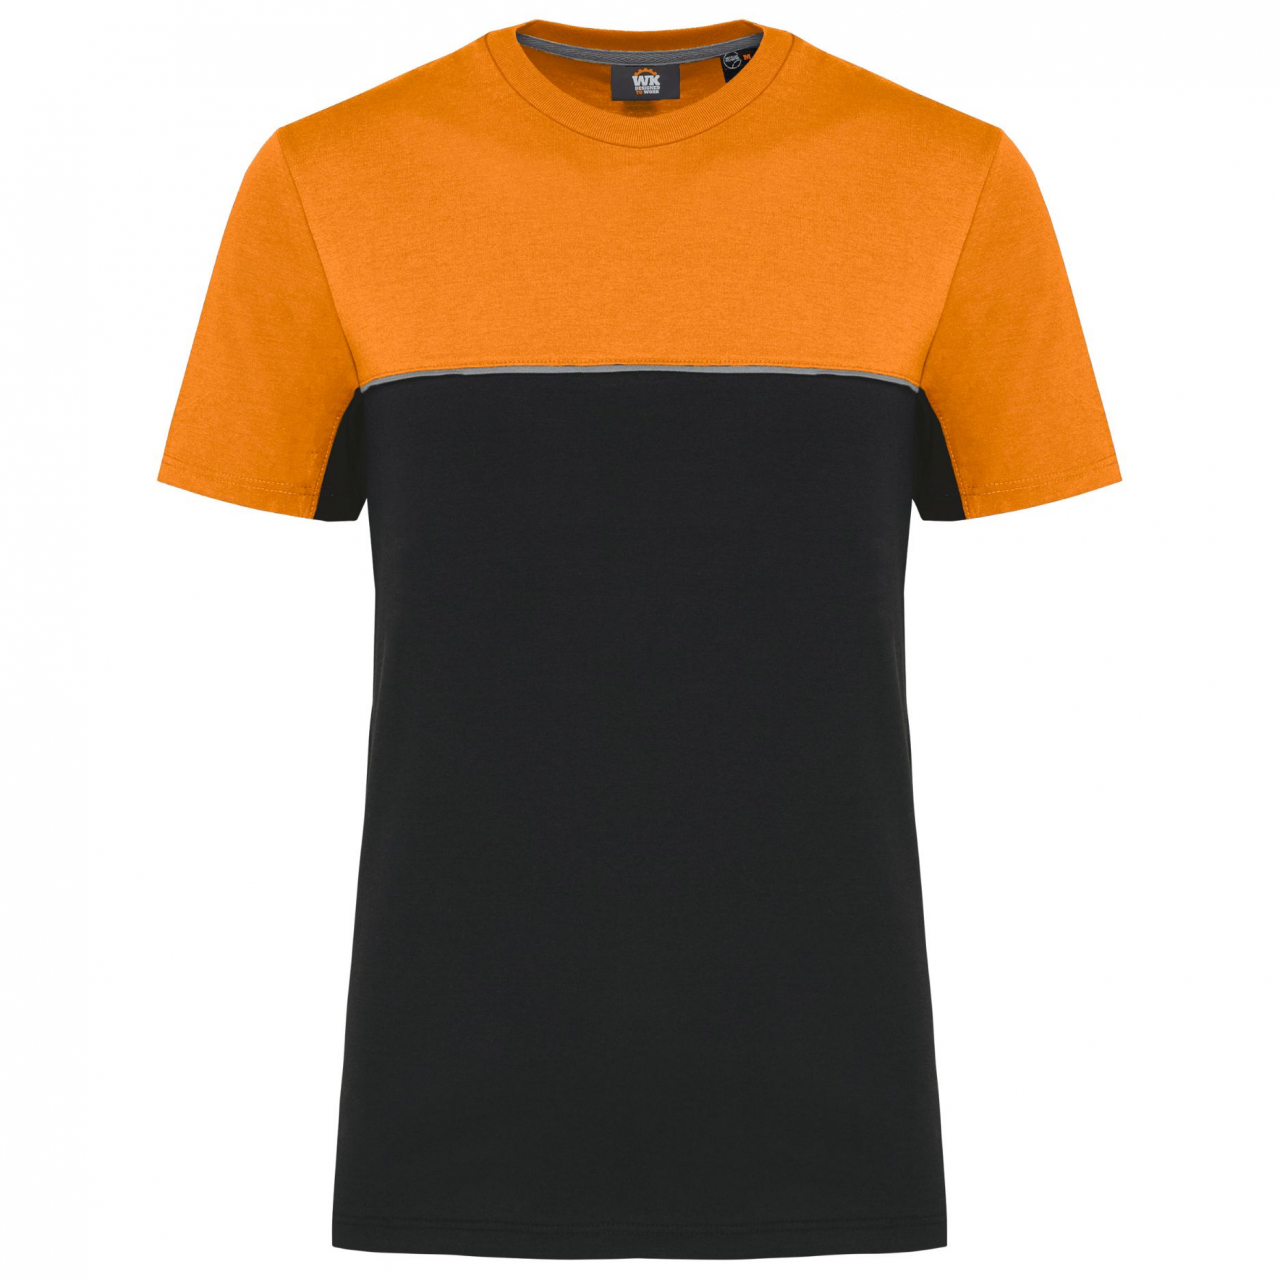 Pracovní triko dvoubarevné WK - černé-oranžové, L